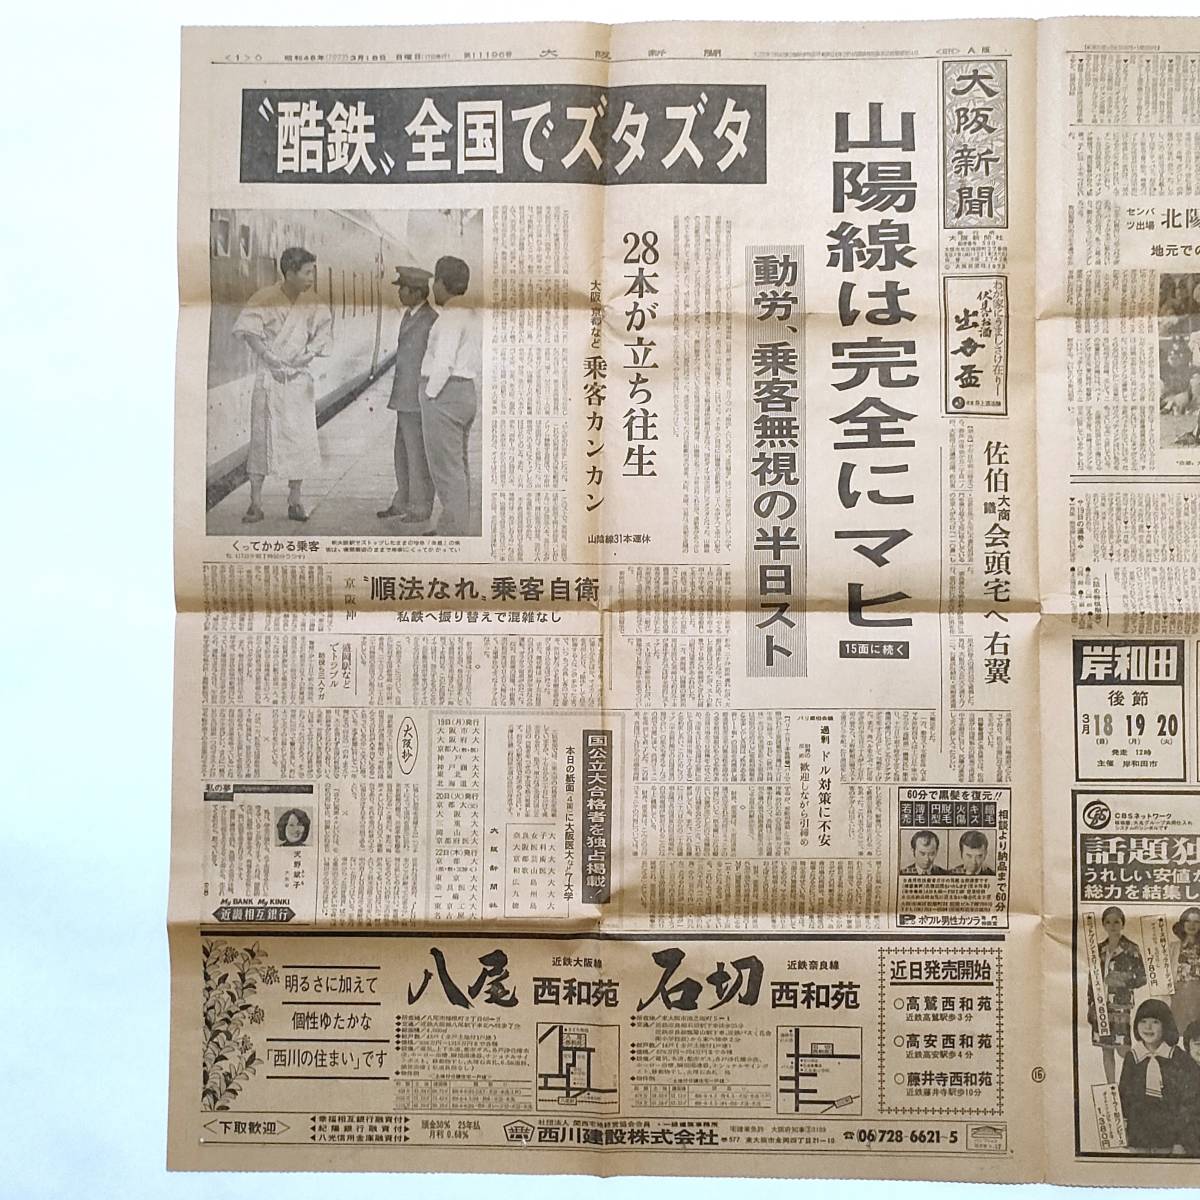 大阪新聞 昭和48年3月18日 動労、半日スト・大景気 今昔、松永定三の画像1